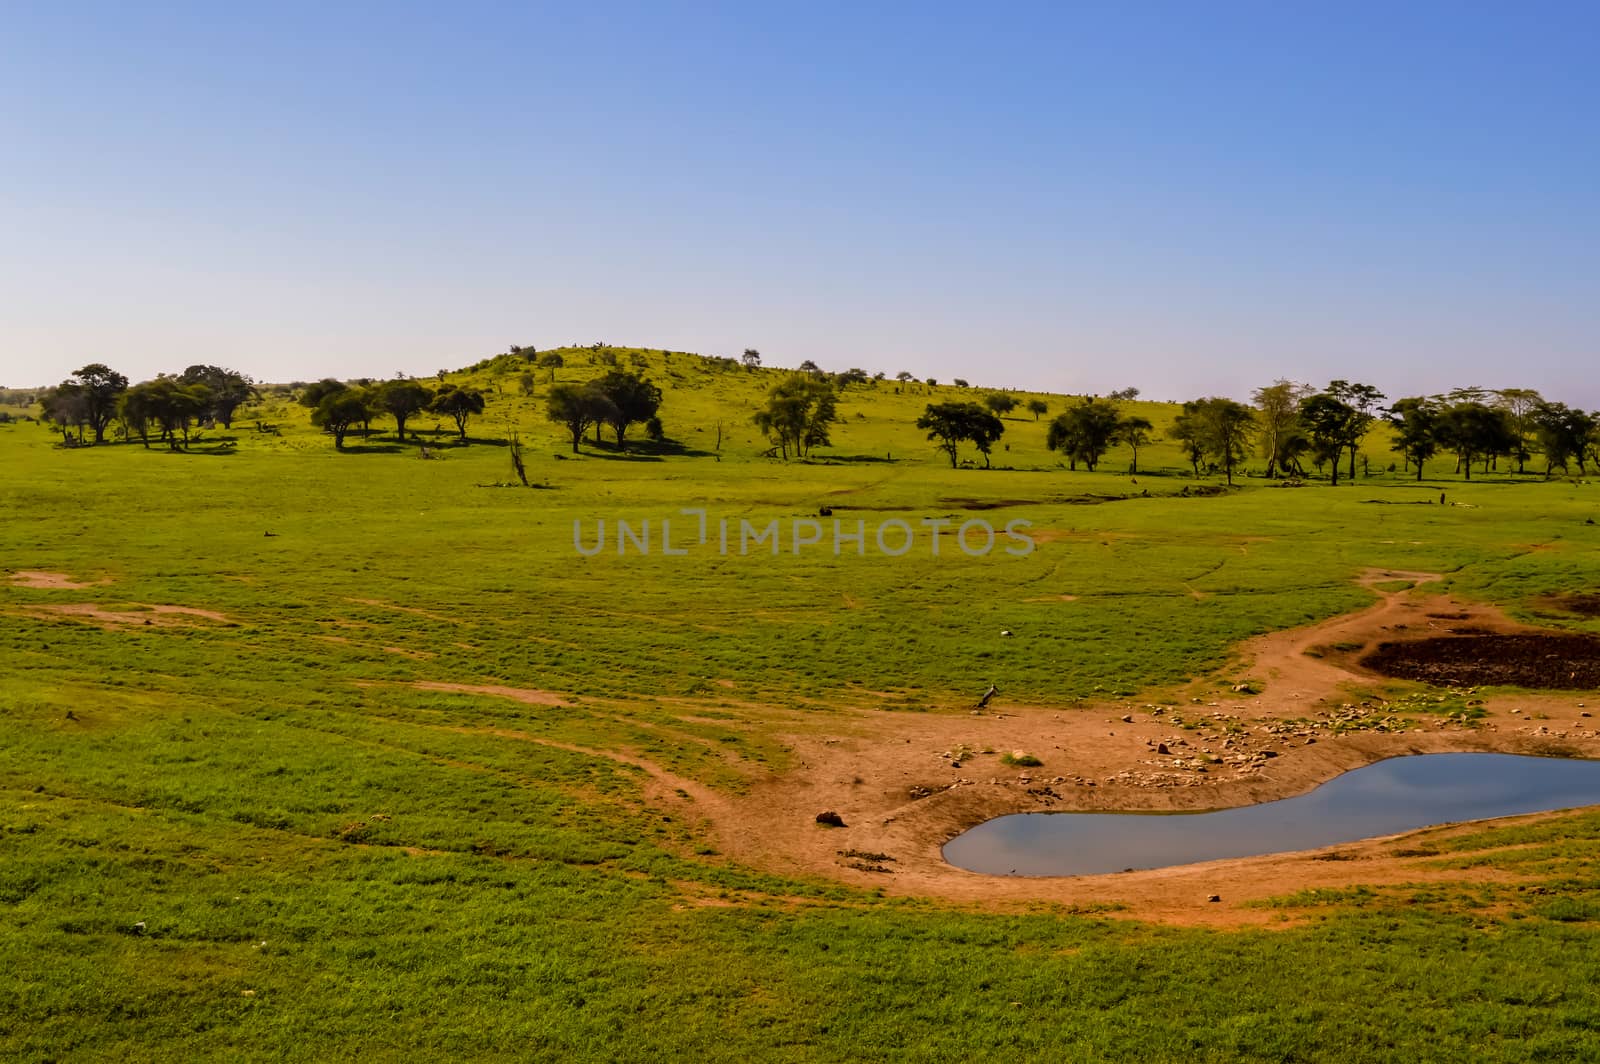 Landscapes of Tsavo West National Park in Kenya, Africa